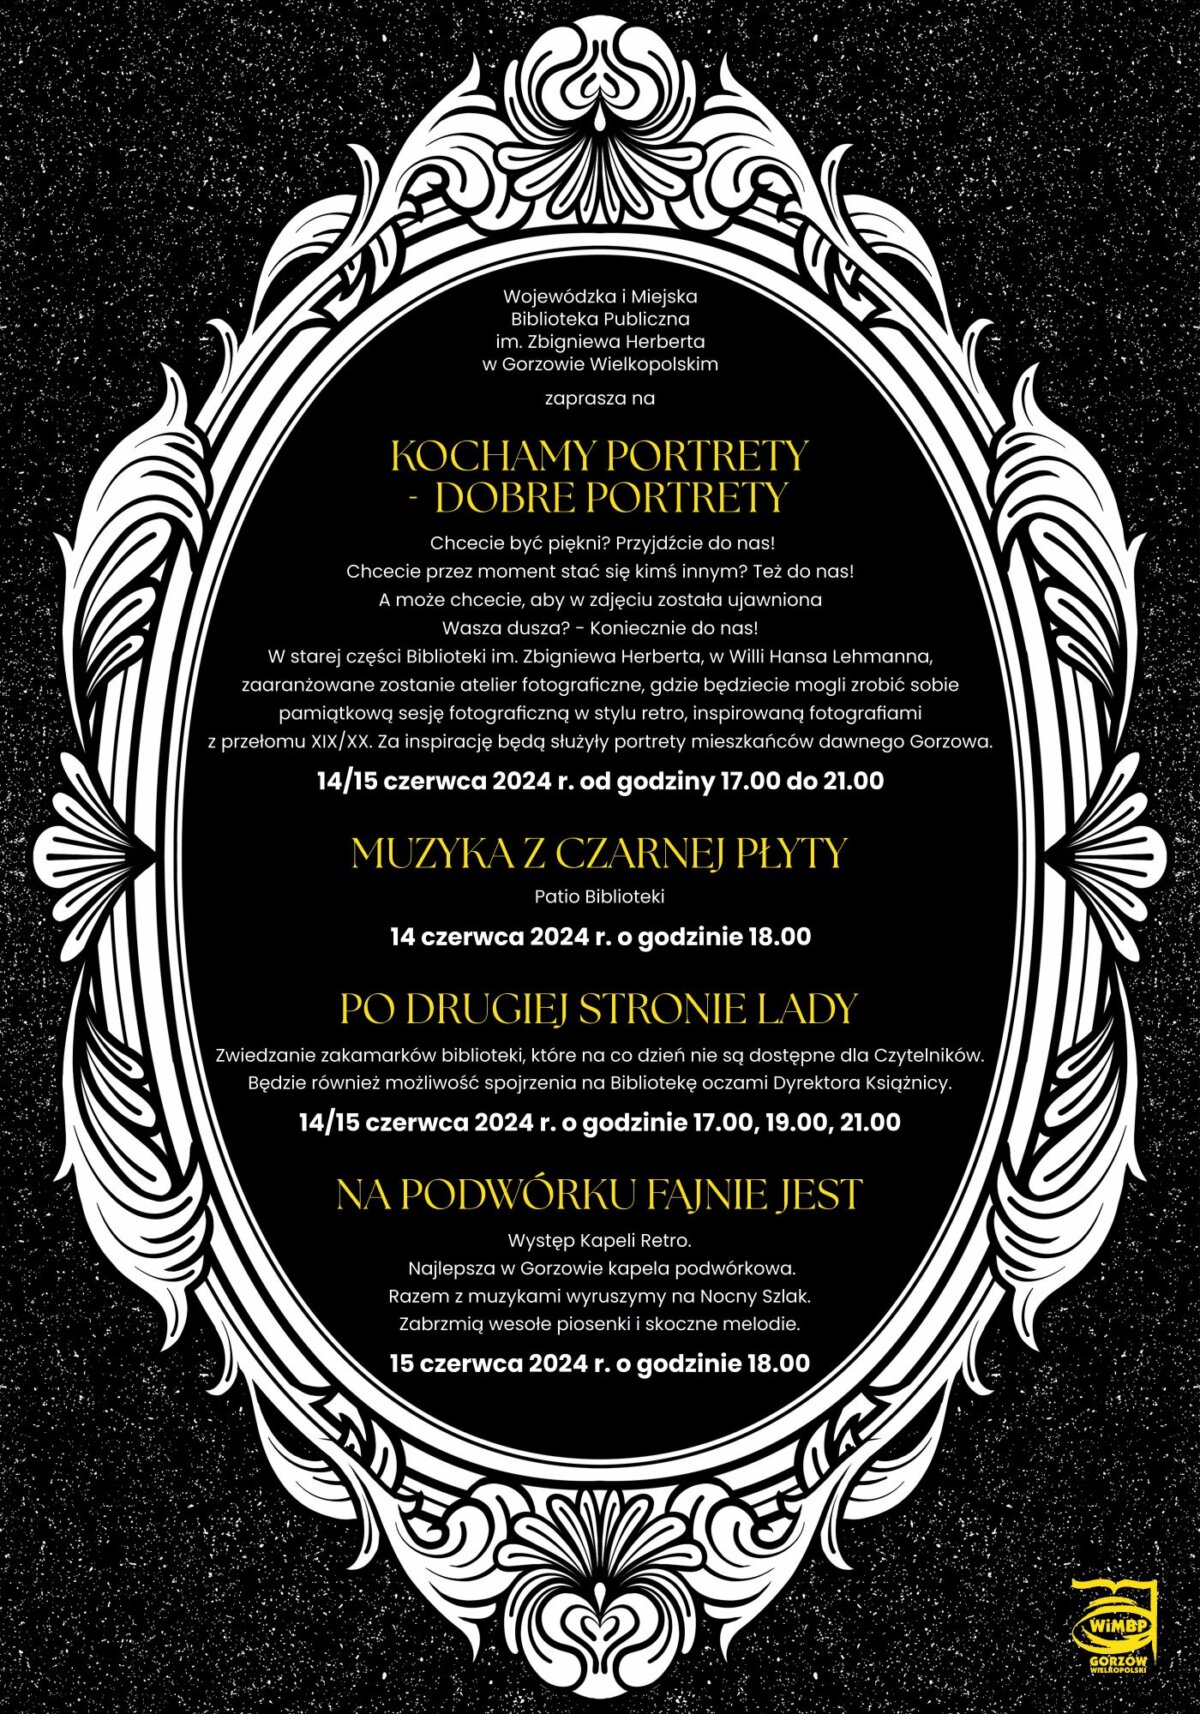 plakat promujący wydarzenie Nocny Szlak Kulturalny.